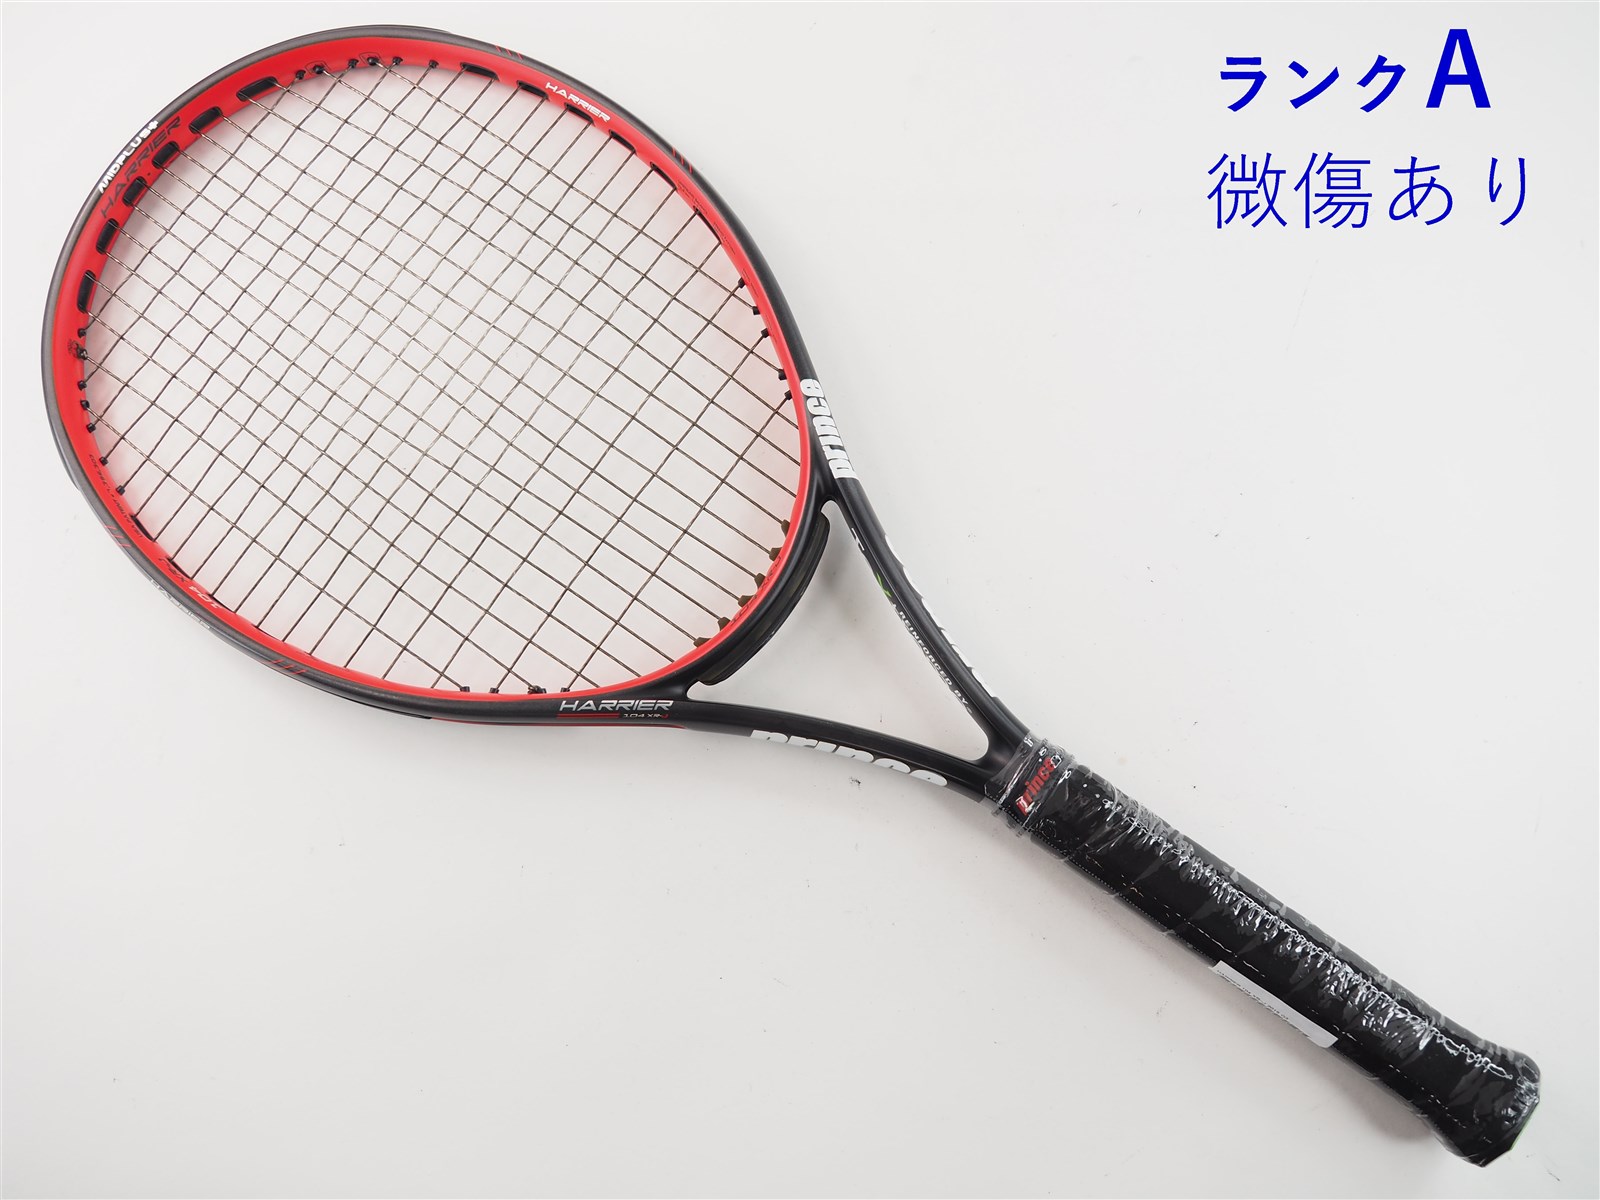 テニスラケット プリンス ハリアー プロ 107 エックスアール 2015年